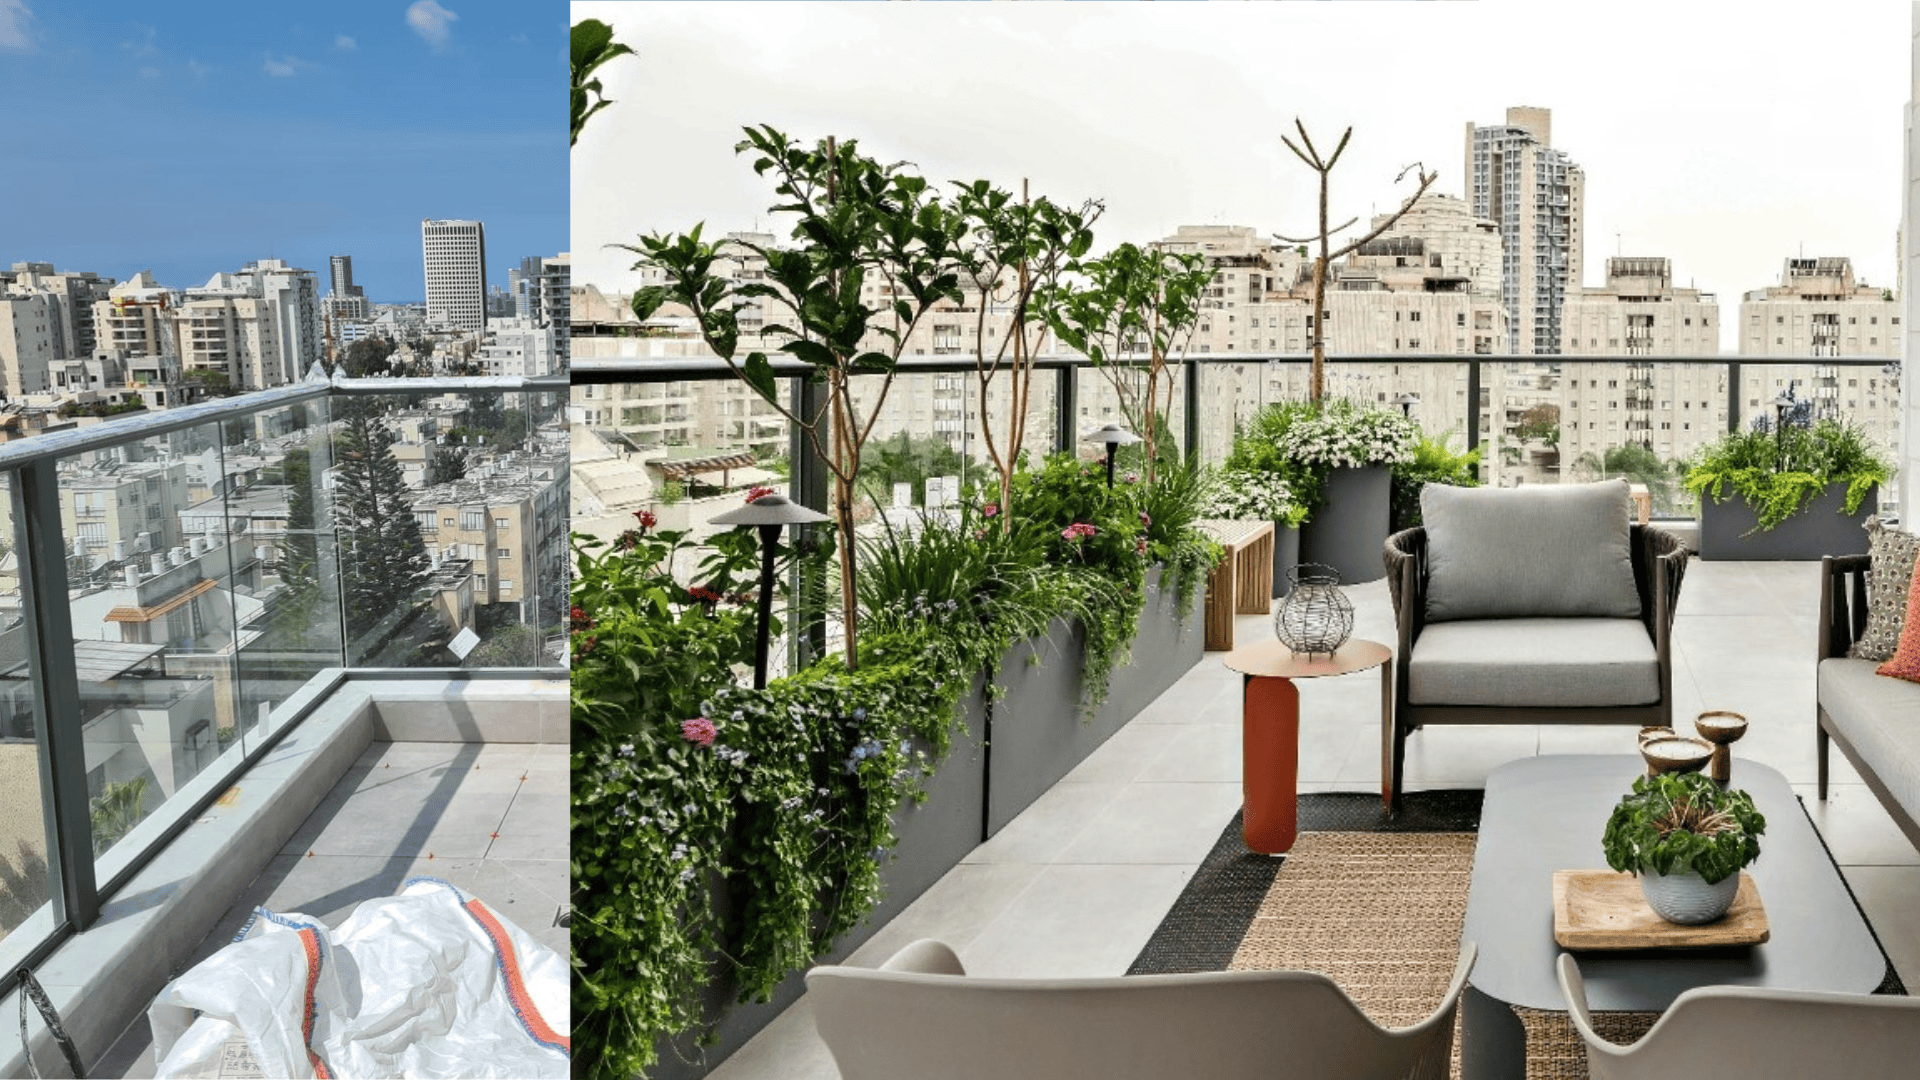 המרפסת. דירה מקבלן הפכה ליצירת אמנות | צילומים: מאור מויאל, הלל אדריכלות